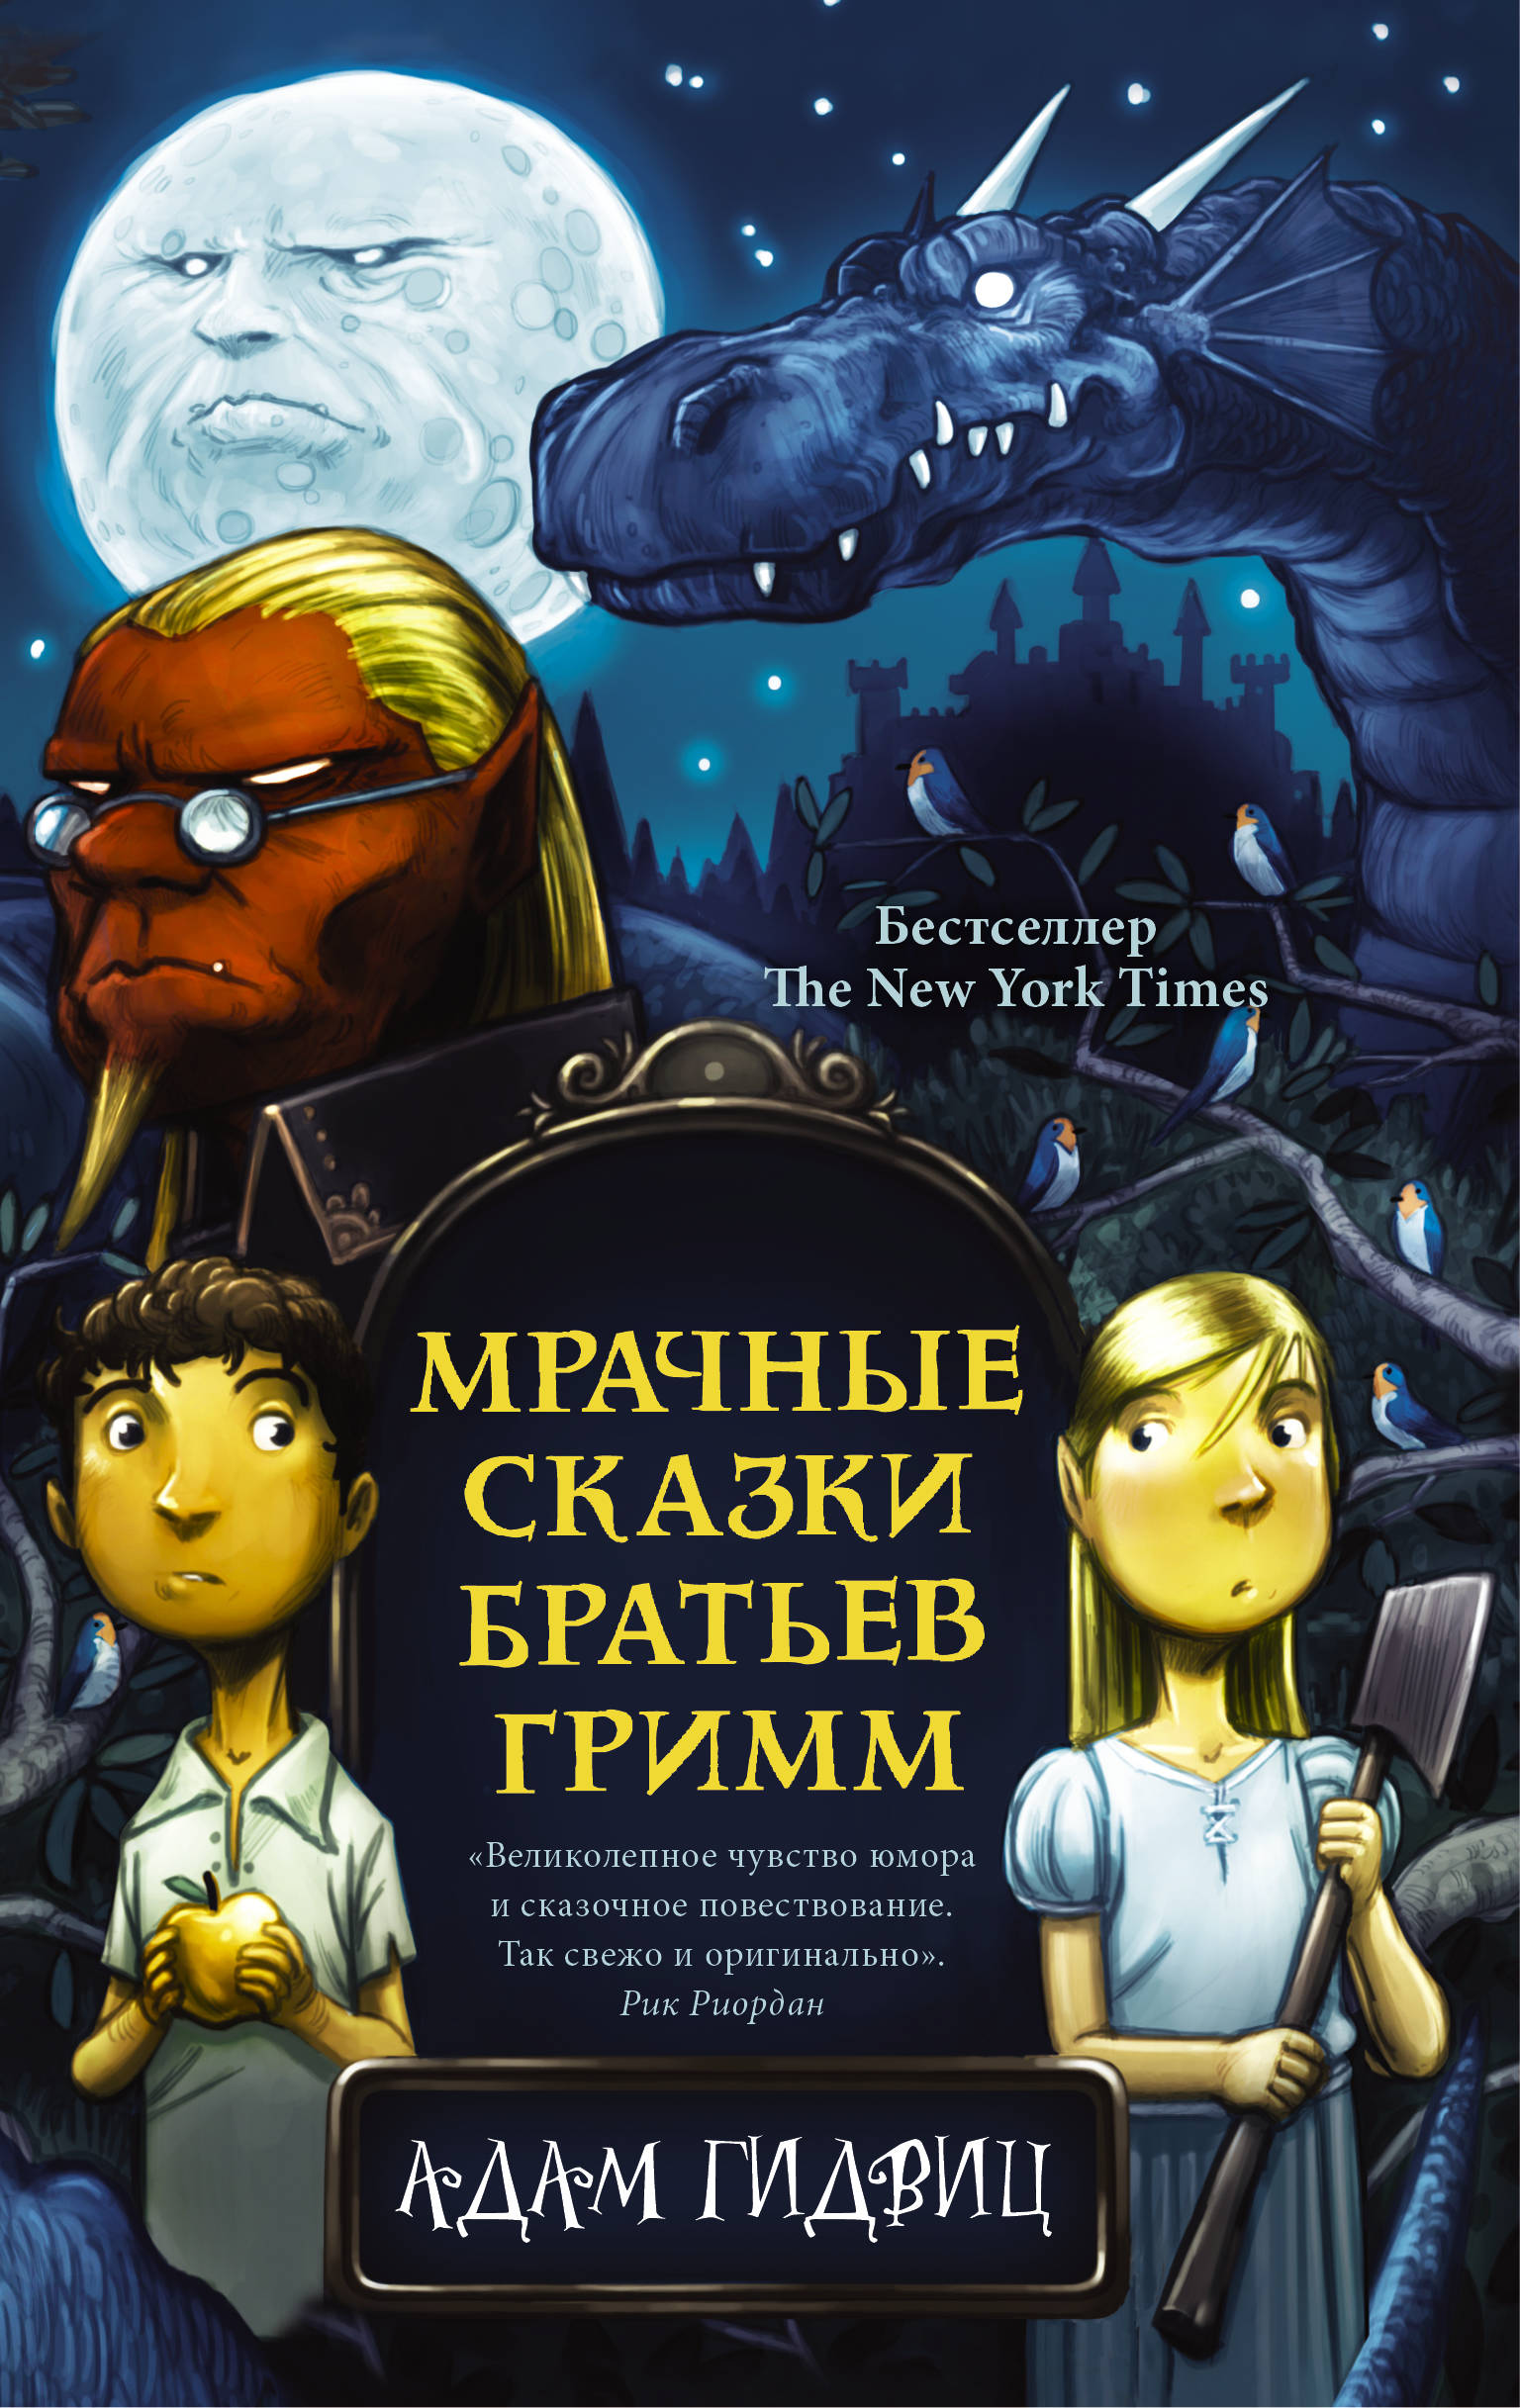 Зловещие сказки по рассказам братьев. A Tale Dark & Grimm 2021. A Tale Dark and Grimm книга.